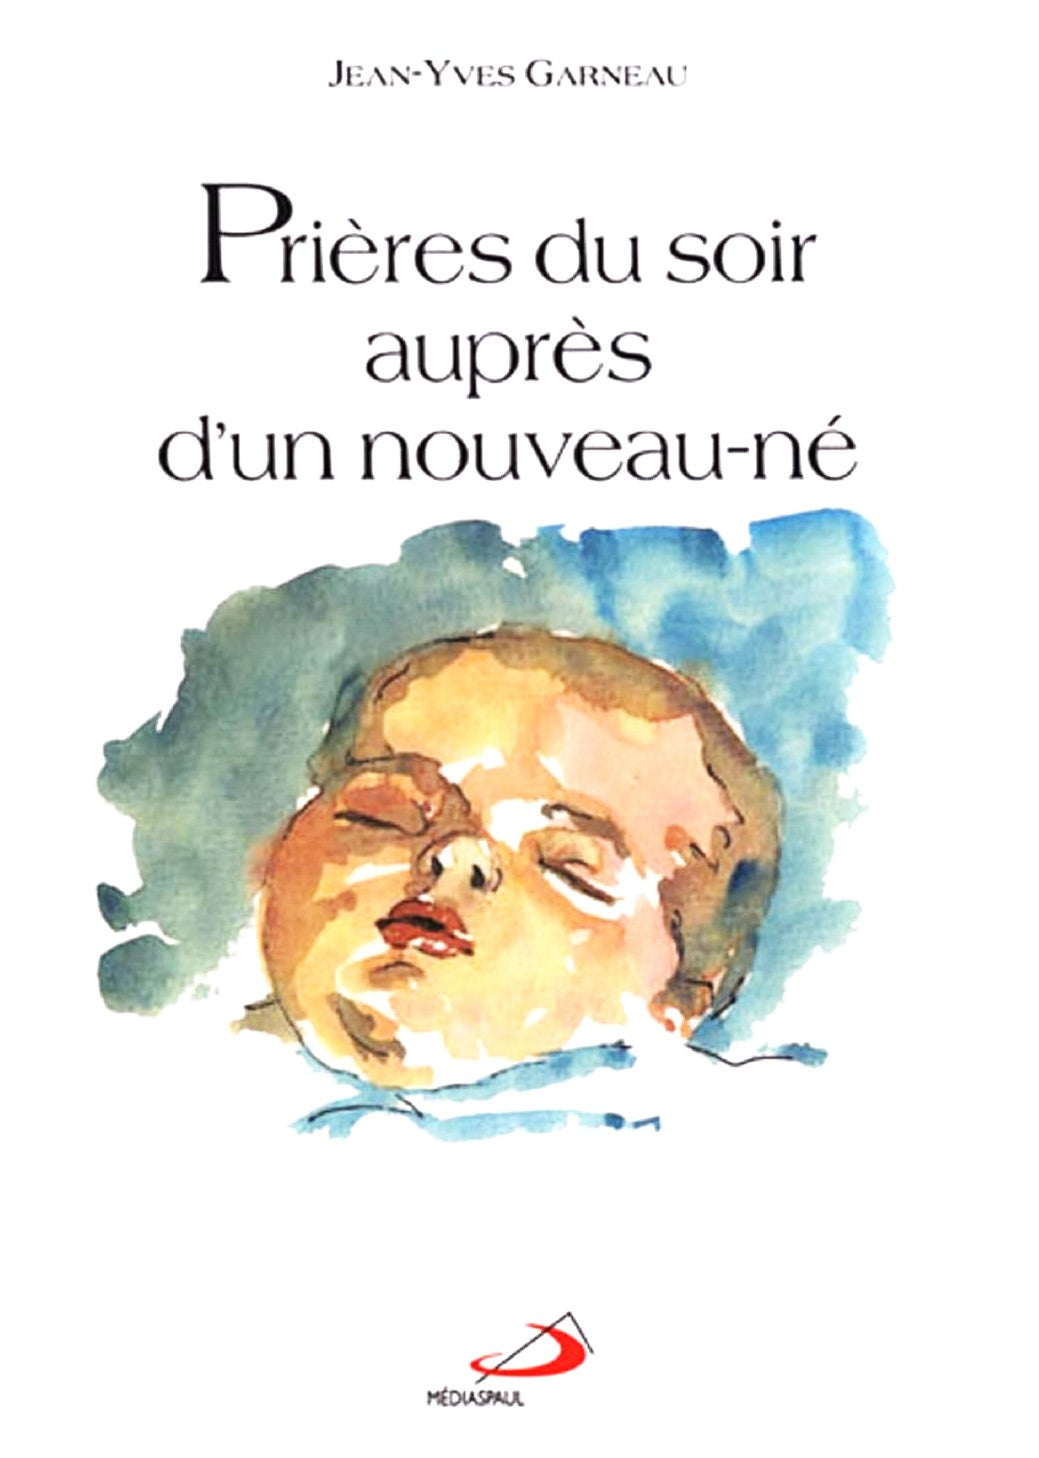 Prières du soir auprès d'un nouveau-né - Jean-Yves Garneau